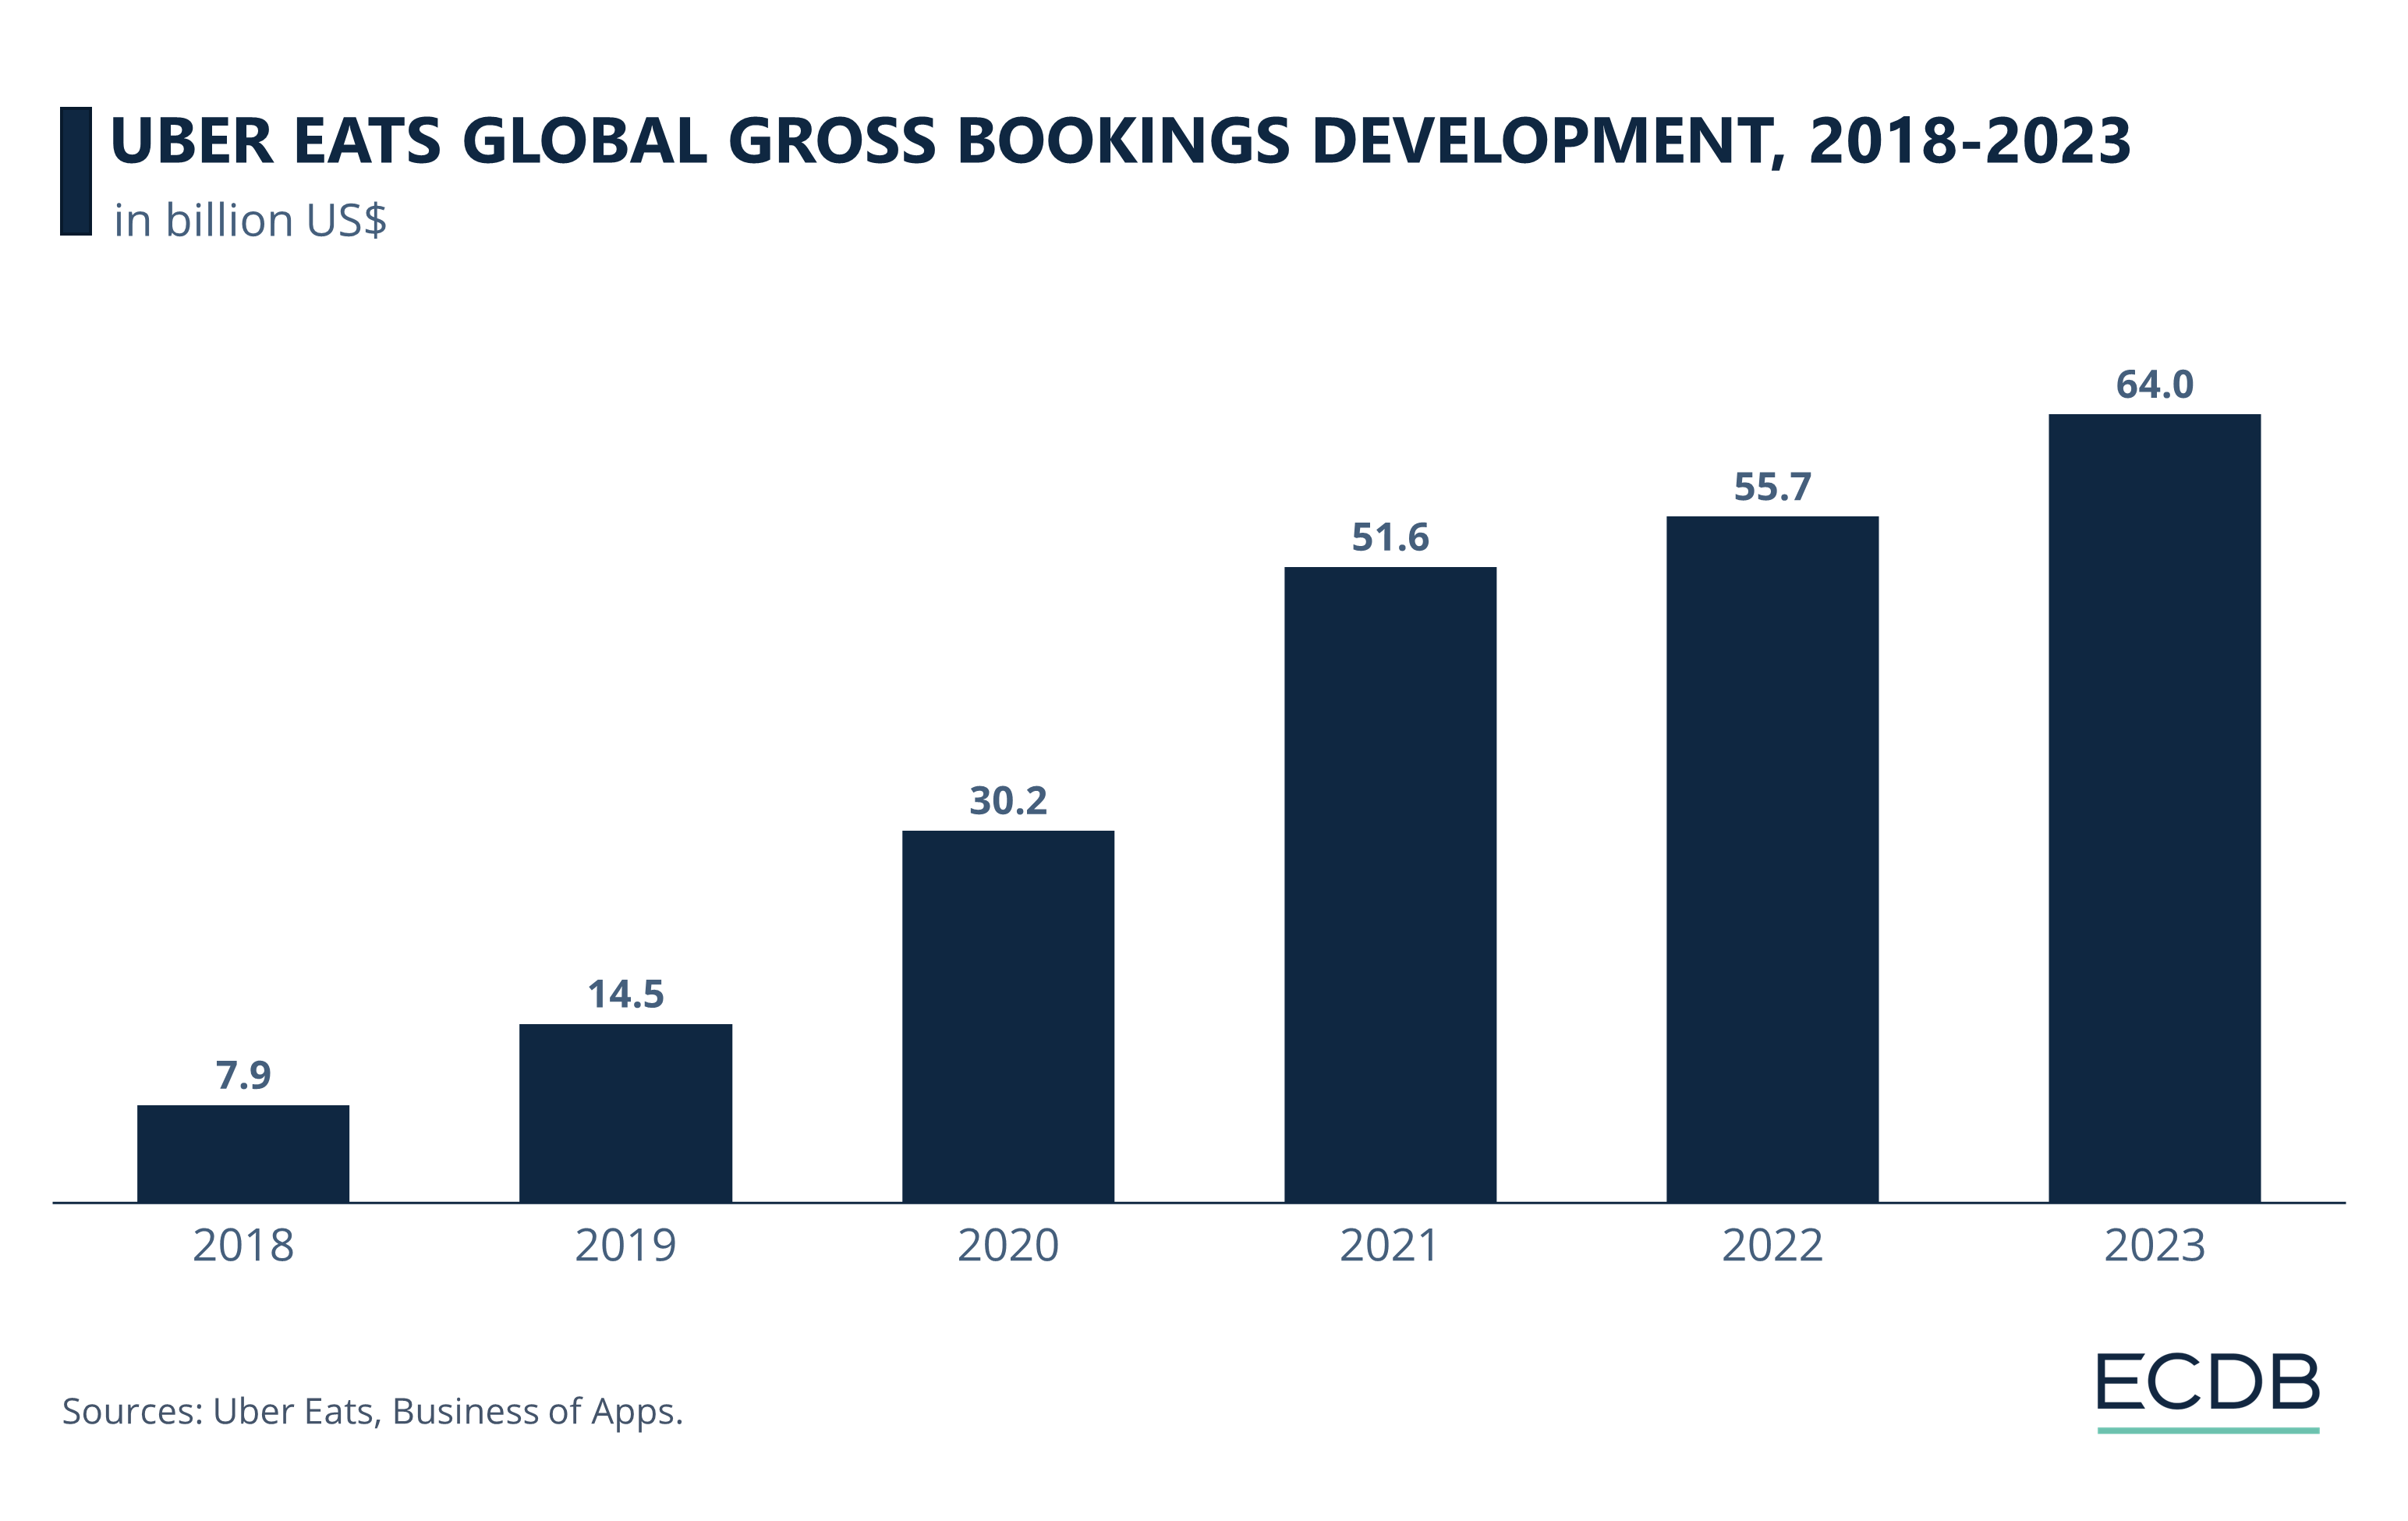 Uber Eats Gross Bookings Development, 2018-2023